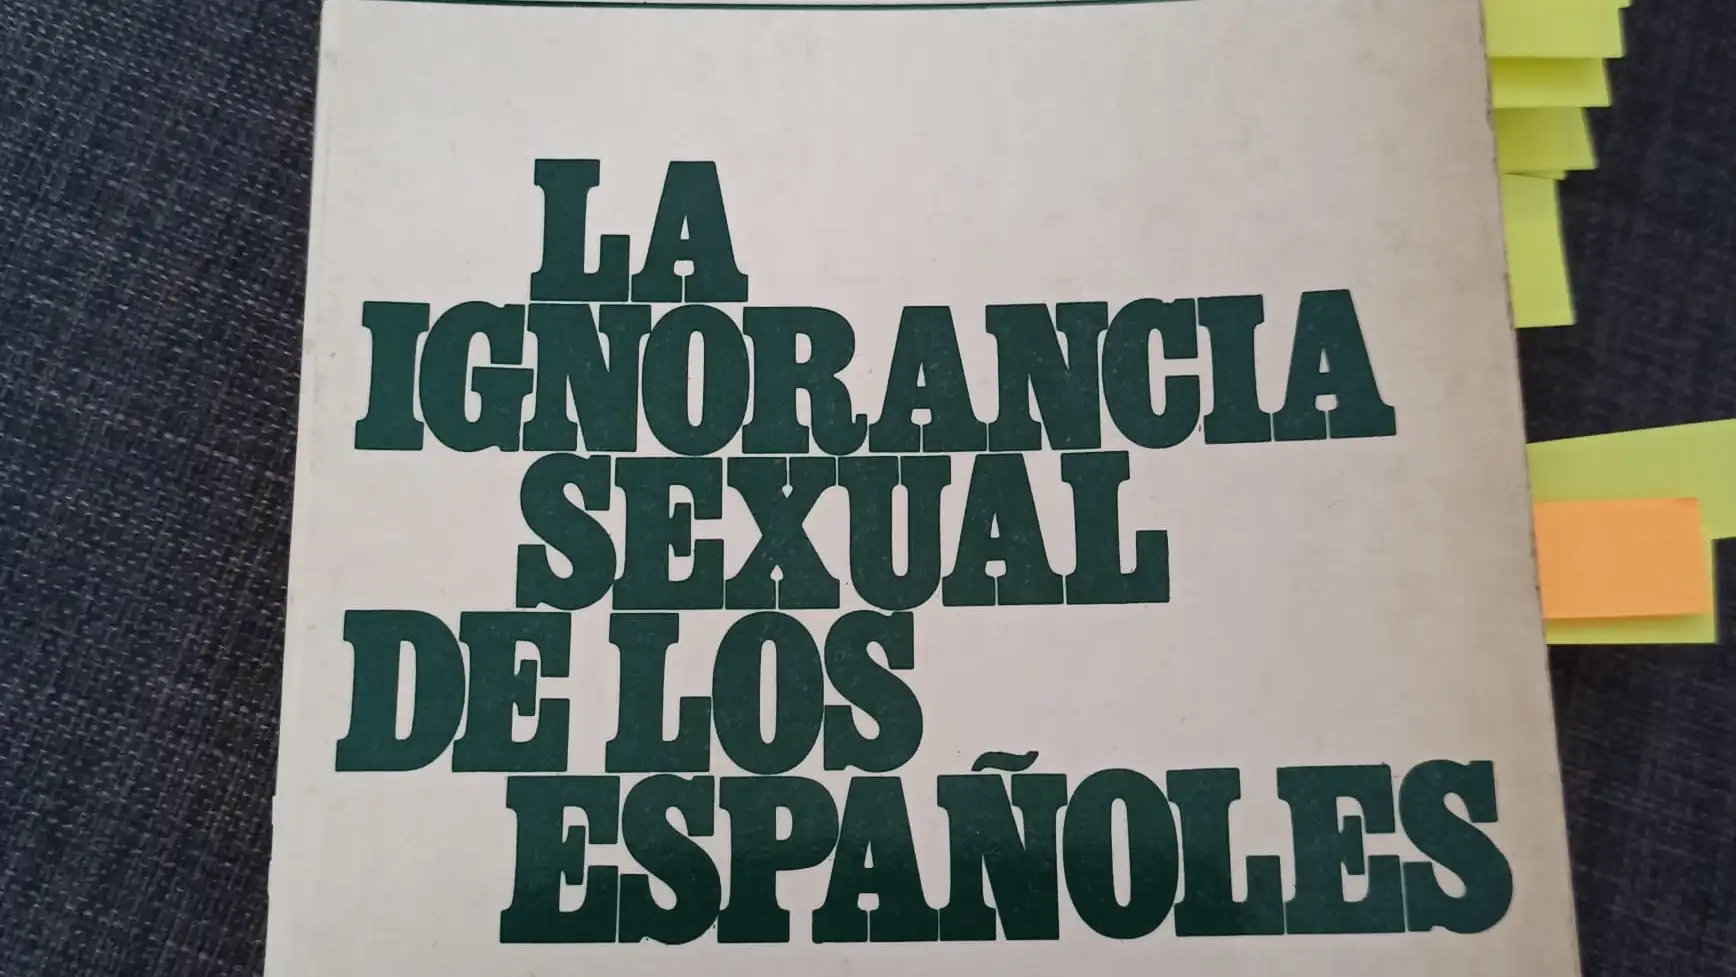 La ignorancia sexual de los españoles